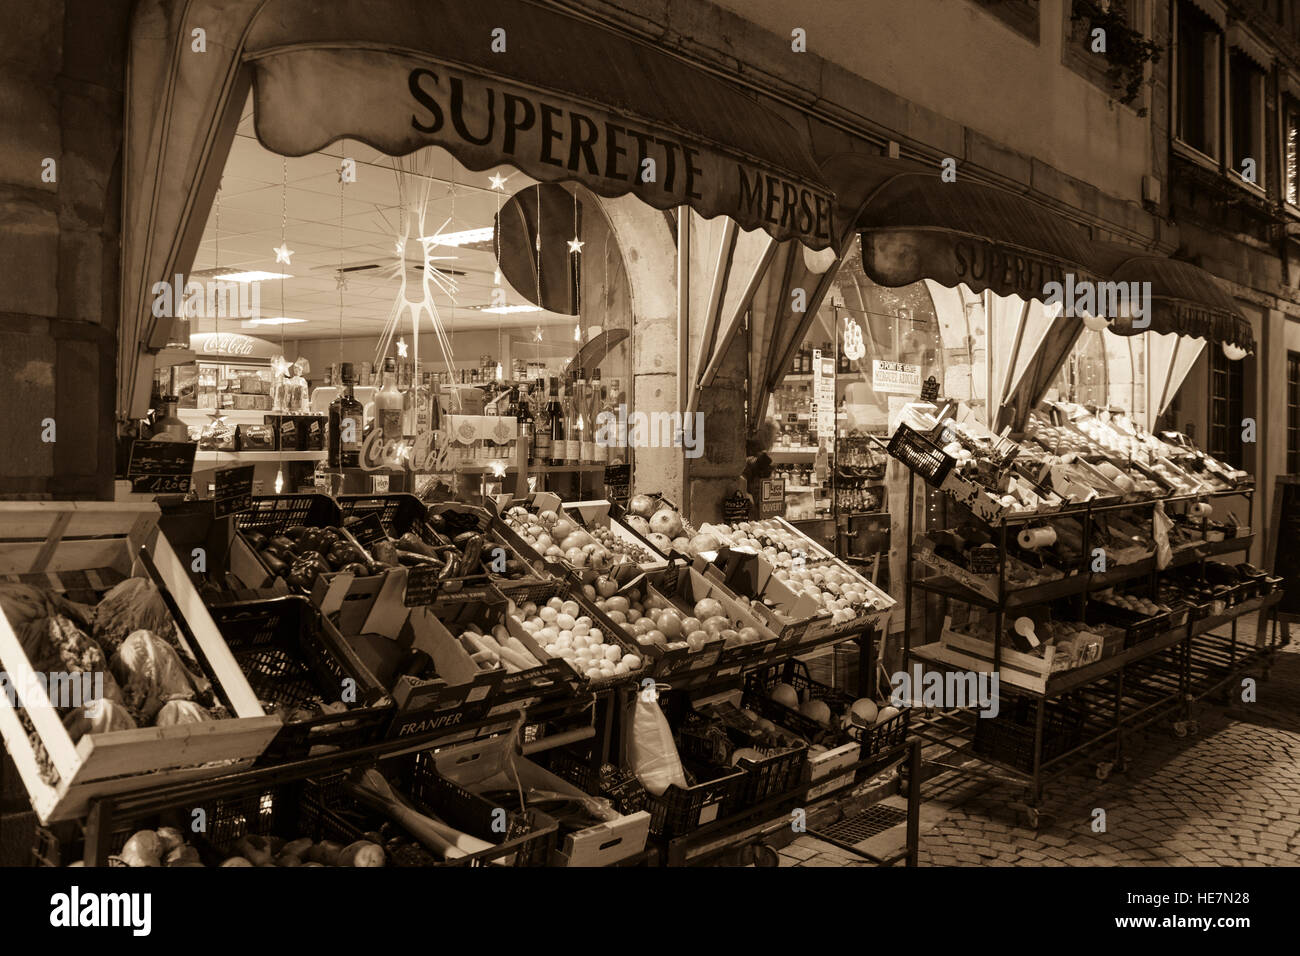 Ein Sepia-Ton-Bild der Superette Mersel, Straßburg Stockfoto